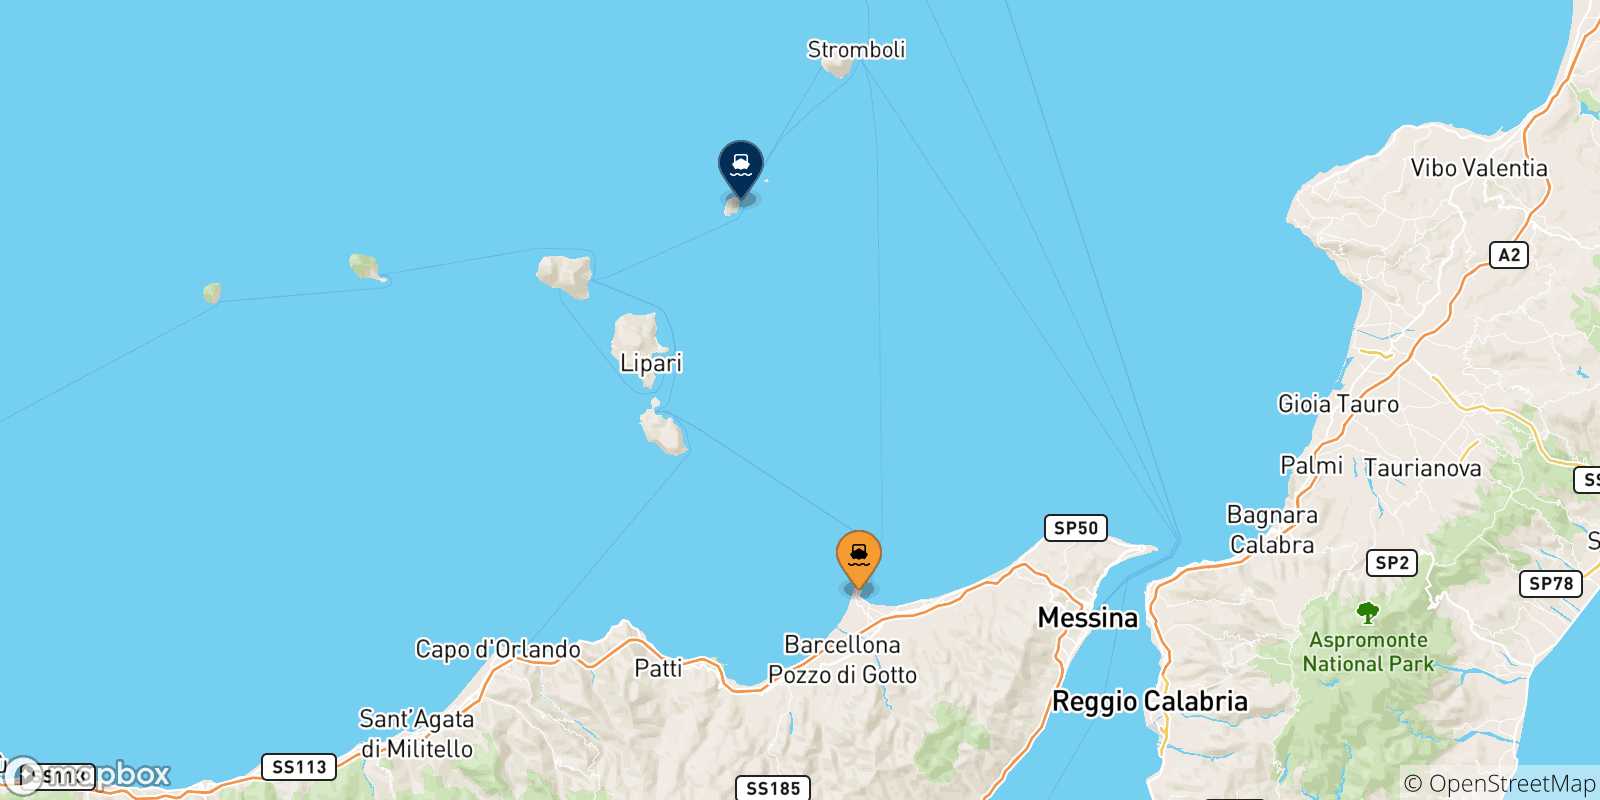 Mappa delle possibili rotte tra la Sicilia e Panarea